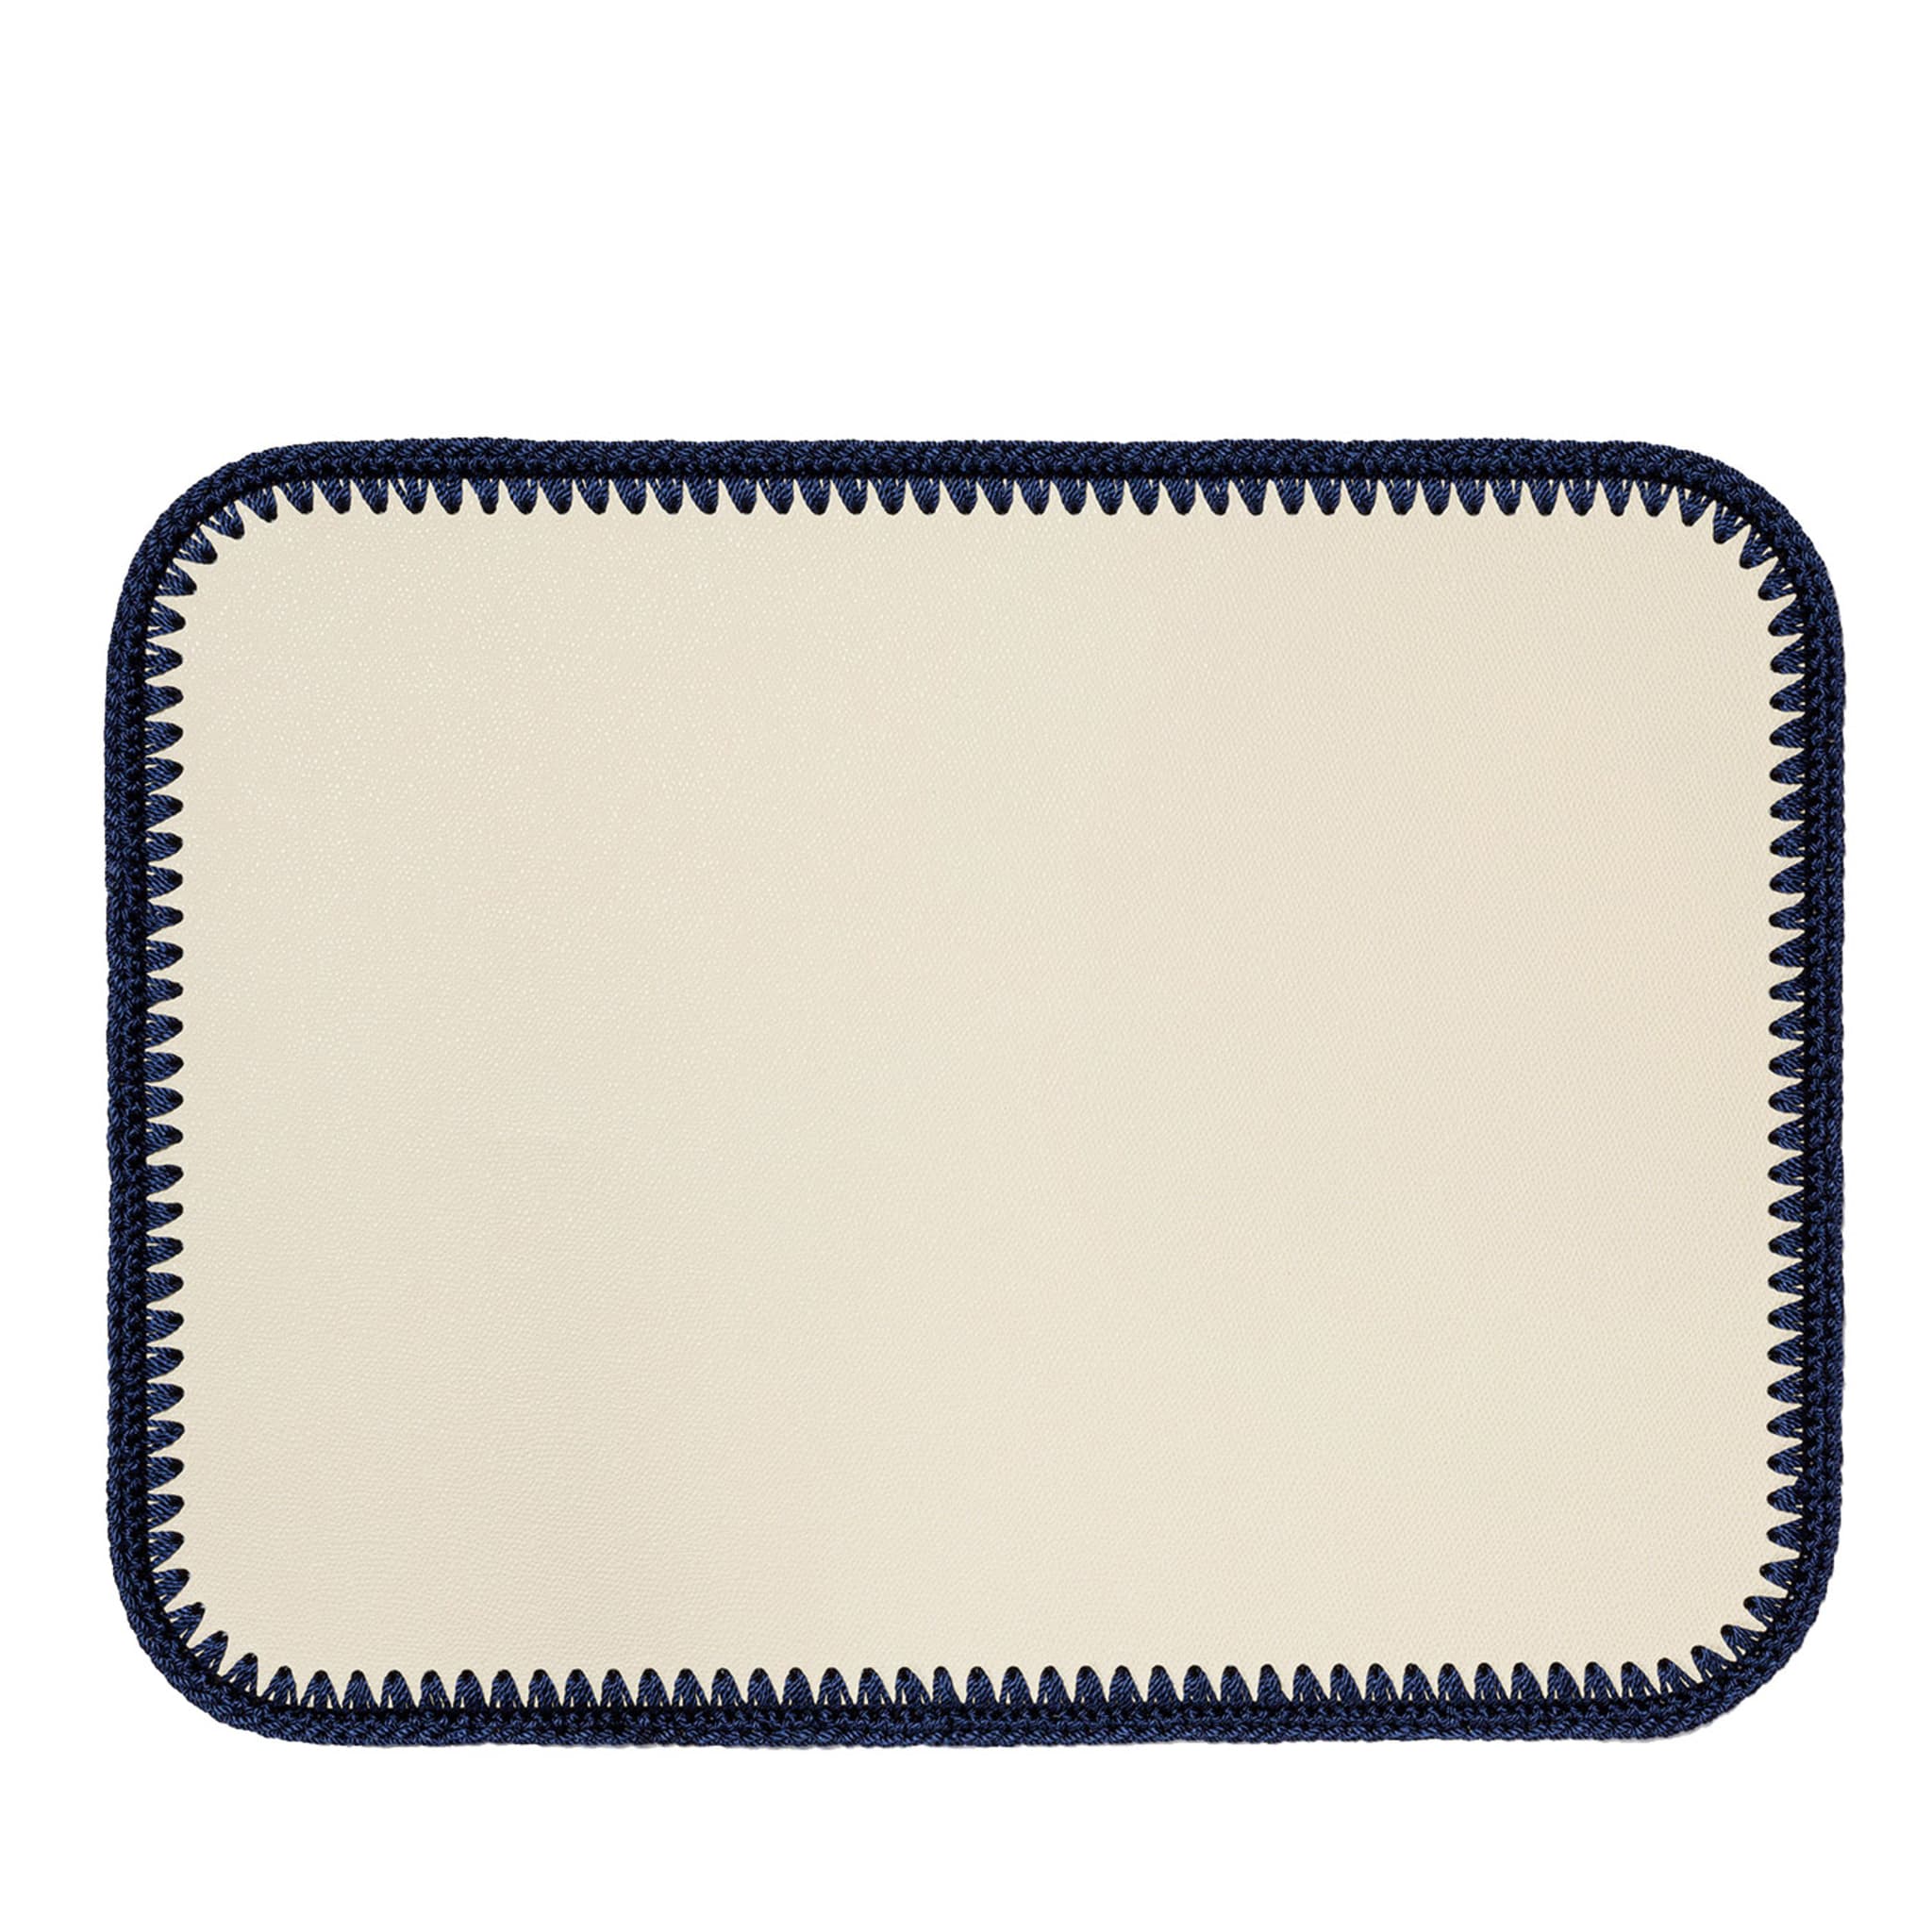 Rochelle - Sets de table rectangulaires en cuir et crochet - Blanc et bleu - Vue principale